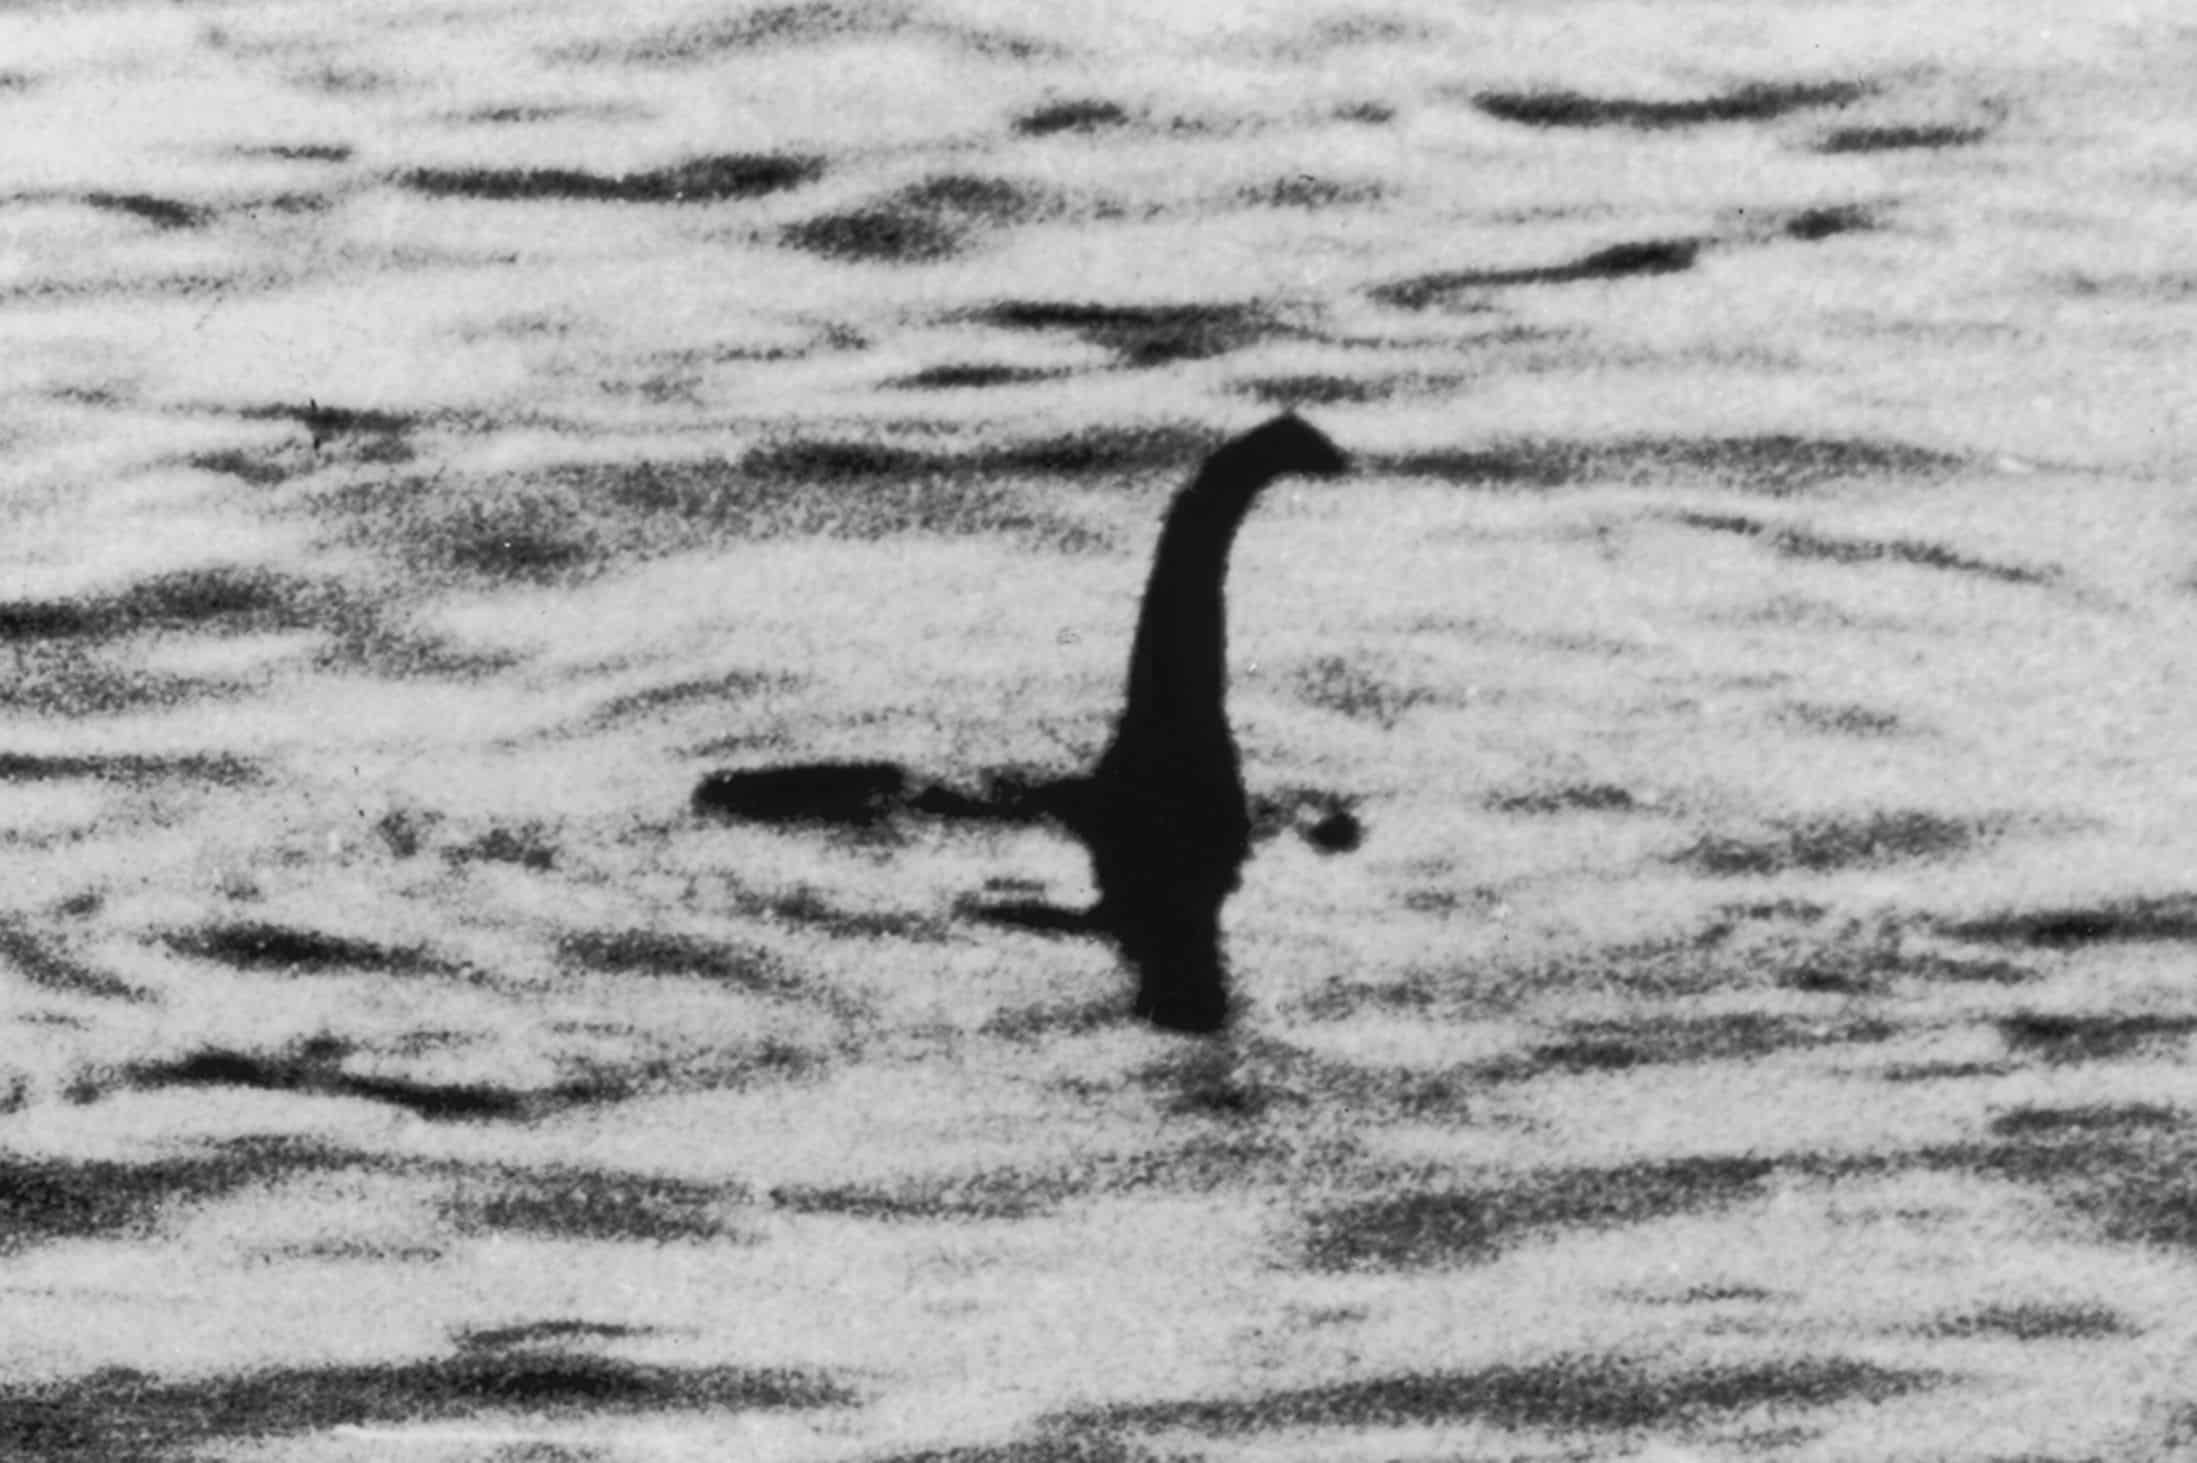 Hallan evidencia relacionada con el monstruo del Lago Ness